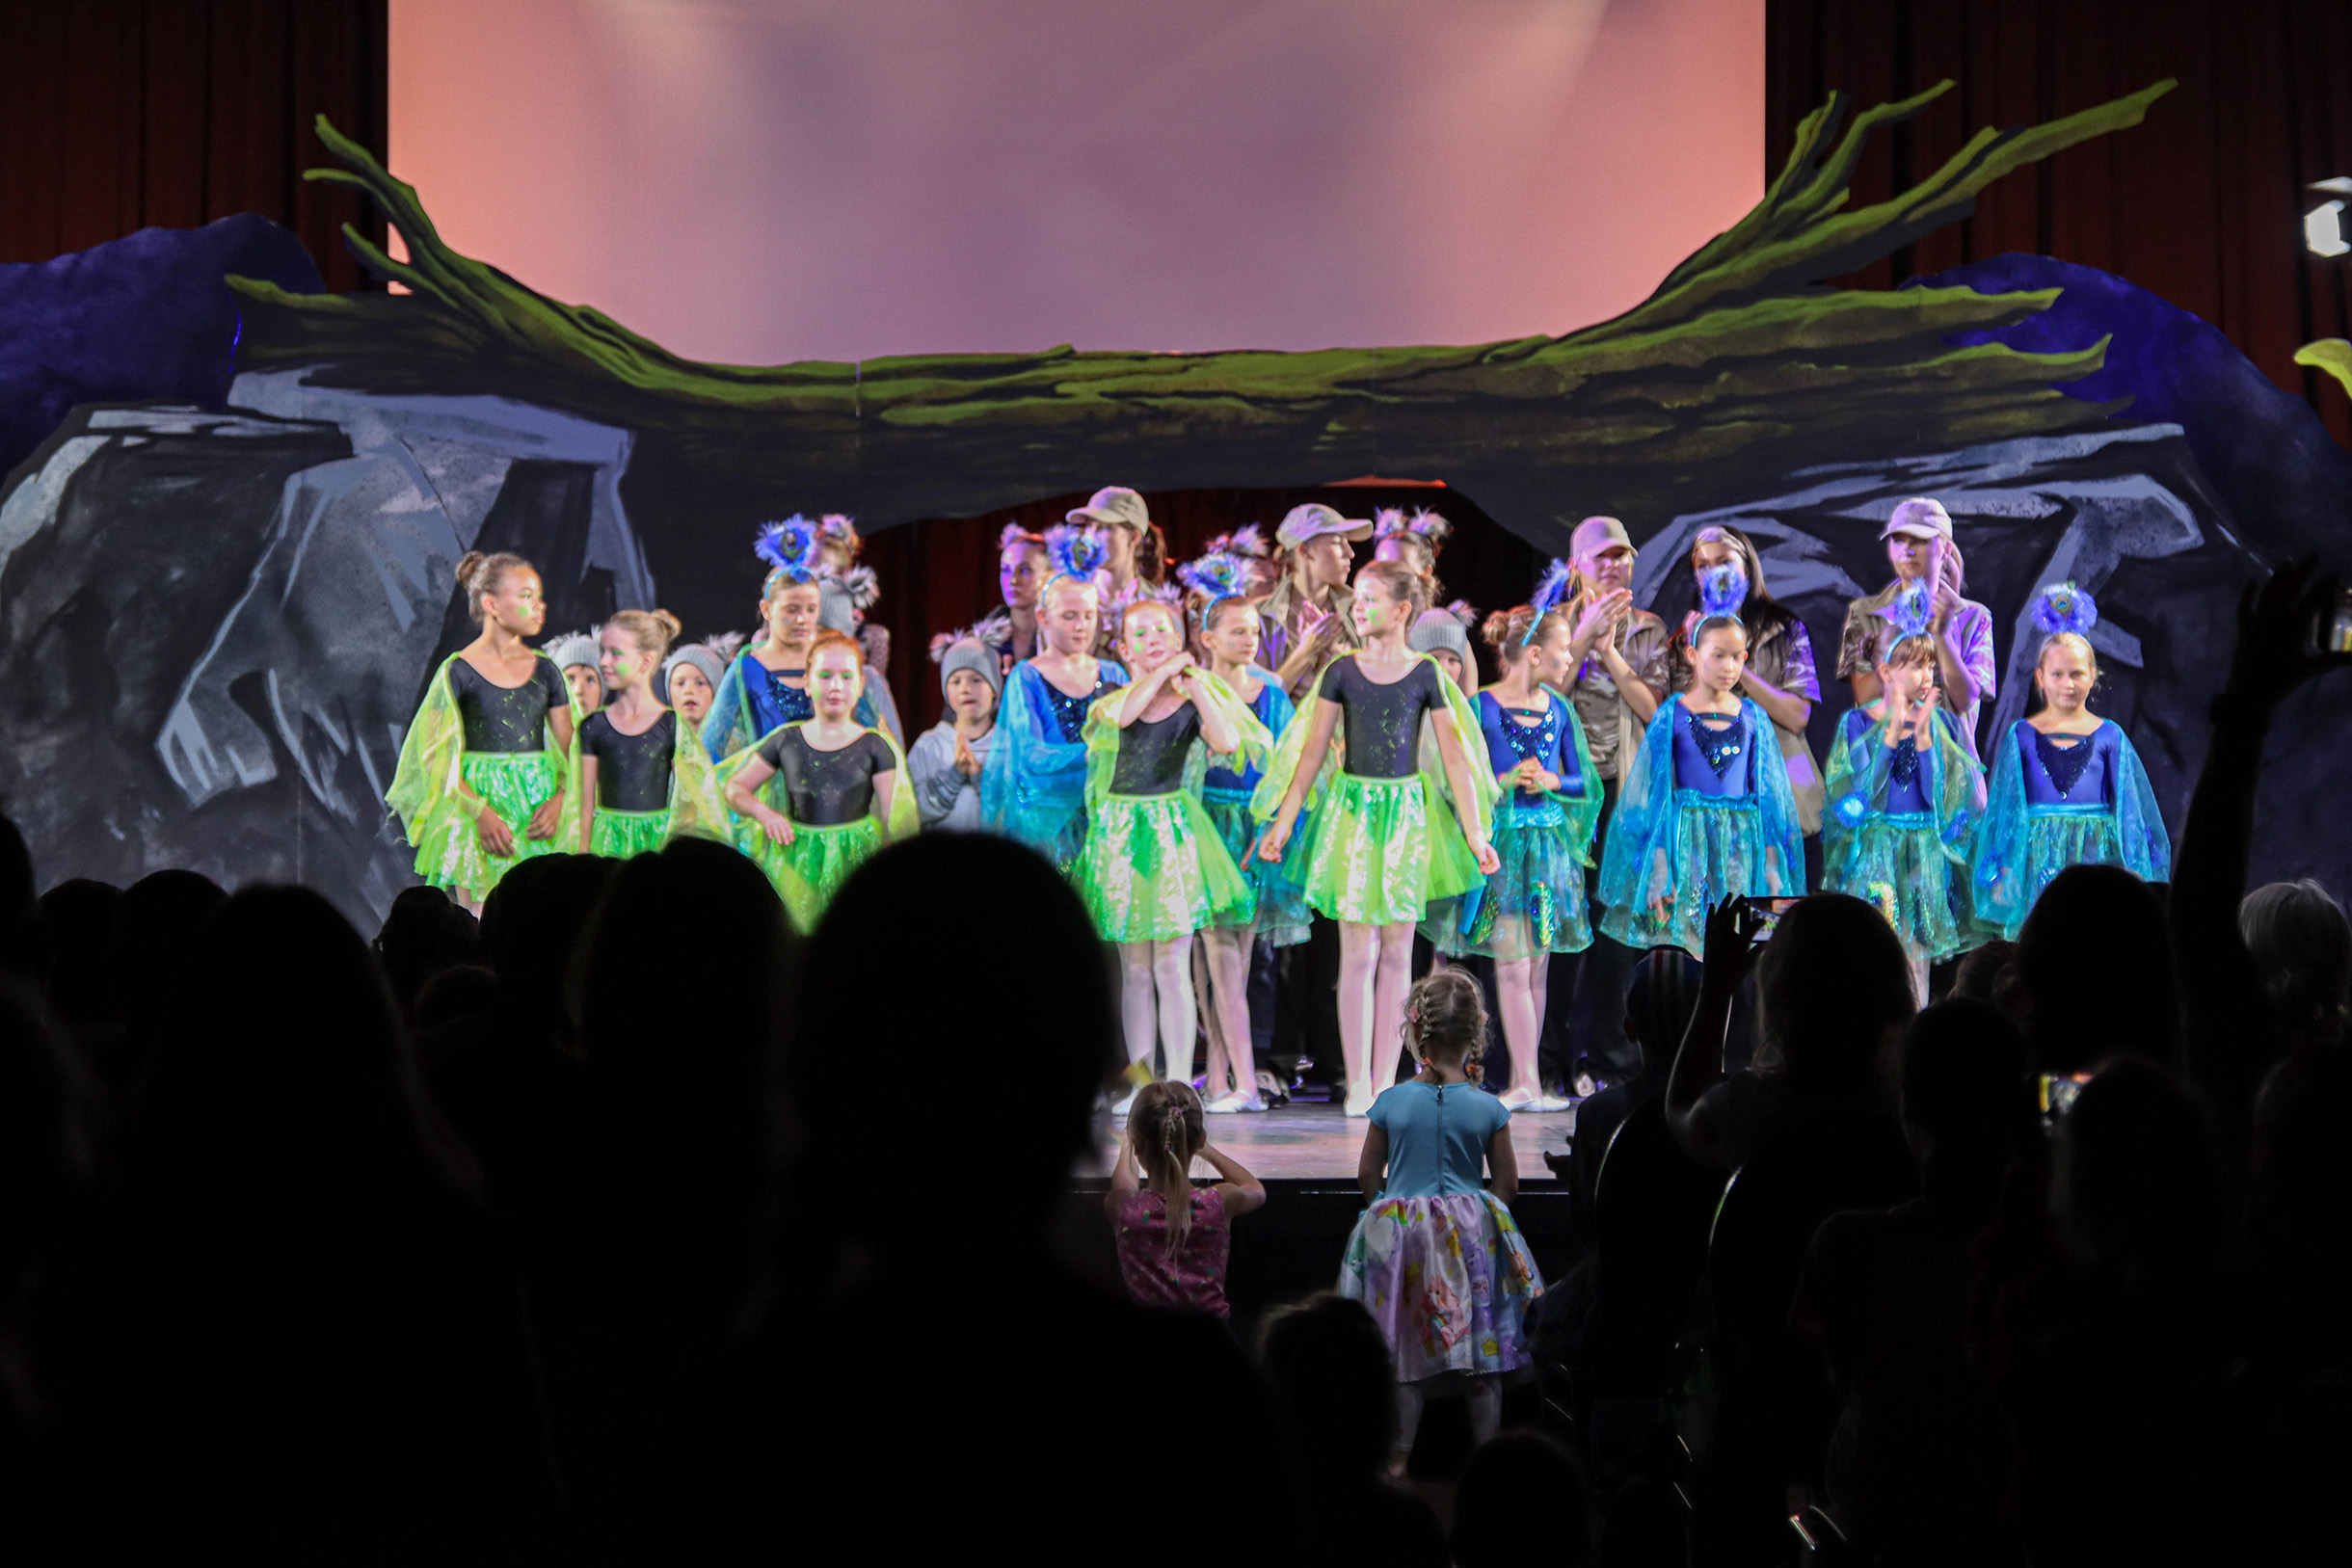 Ca. 15 Mädchen auf der Bühne. Sie stehen in Reihen. Einige in schwarz-grünen Kostümen, wobei der Rock und Flügel grün sind, die anderen tragen blaue Kostüme und blaue Puschel auf dem Kopf.